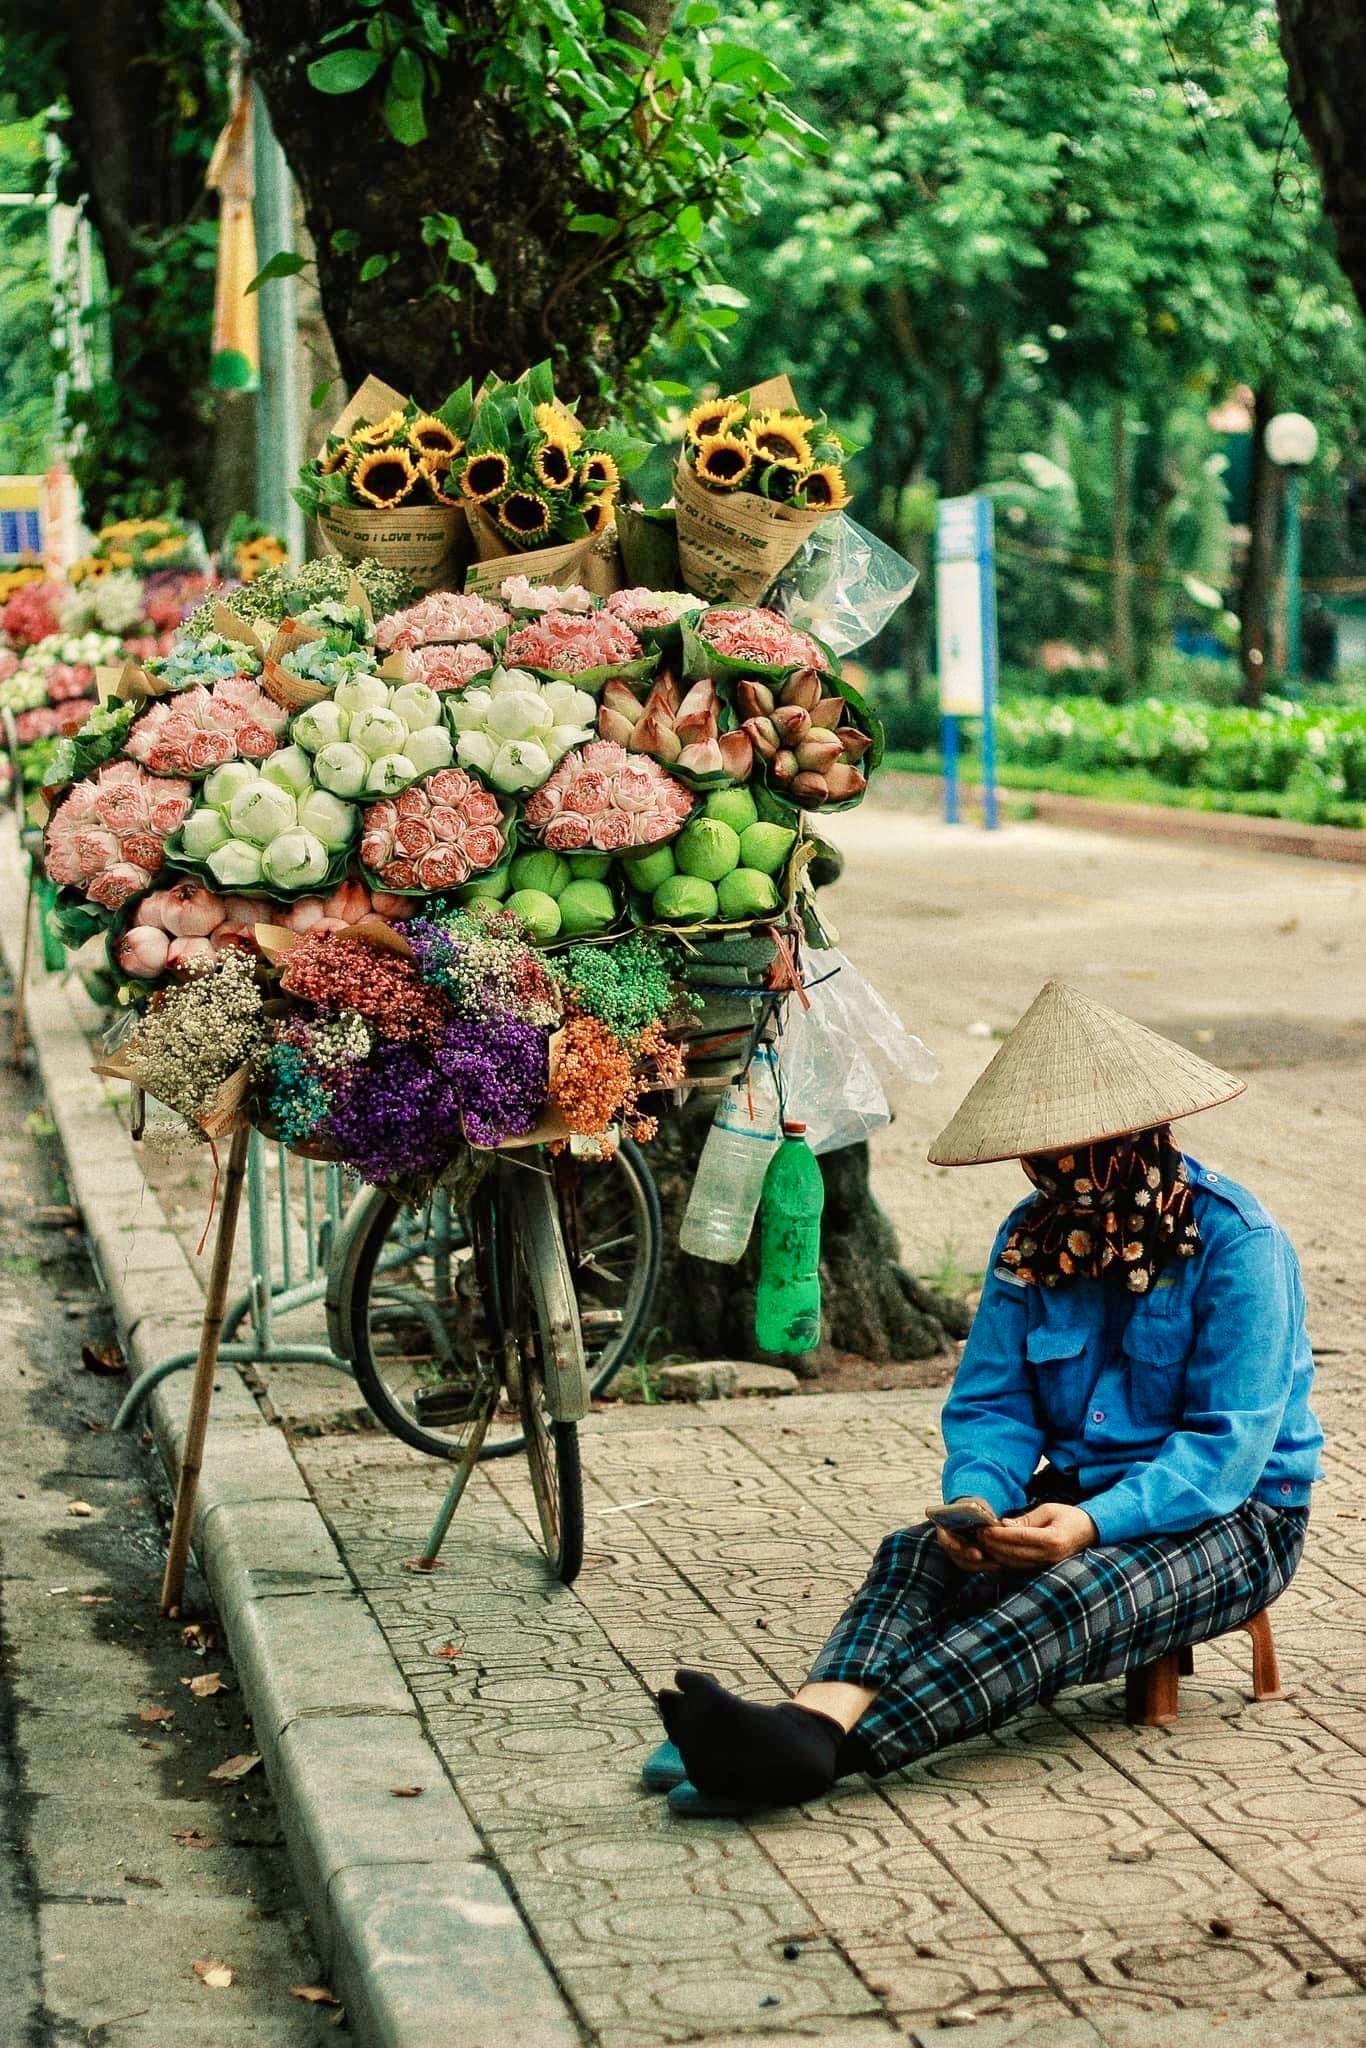 Xe hàng hoa đẹp ngỡ ngàng giữa phố phường Hà Nội - Ảnh 4.